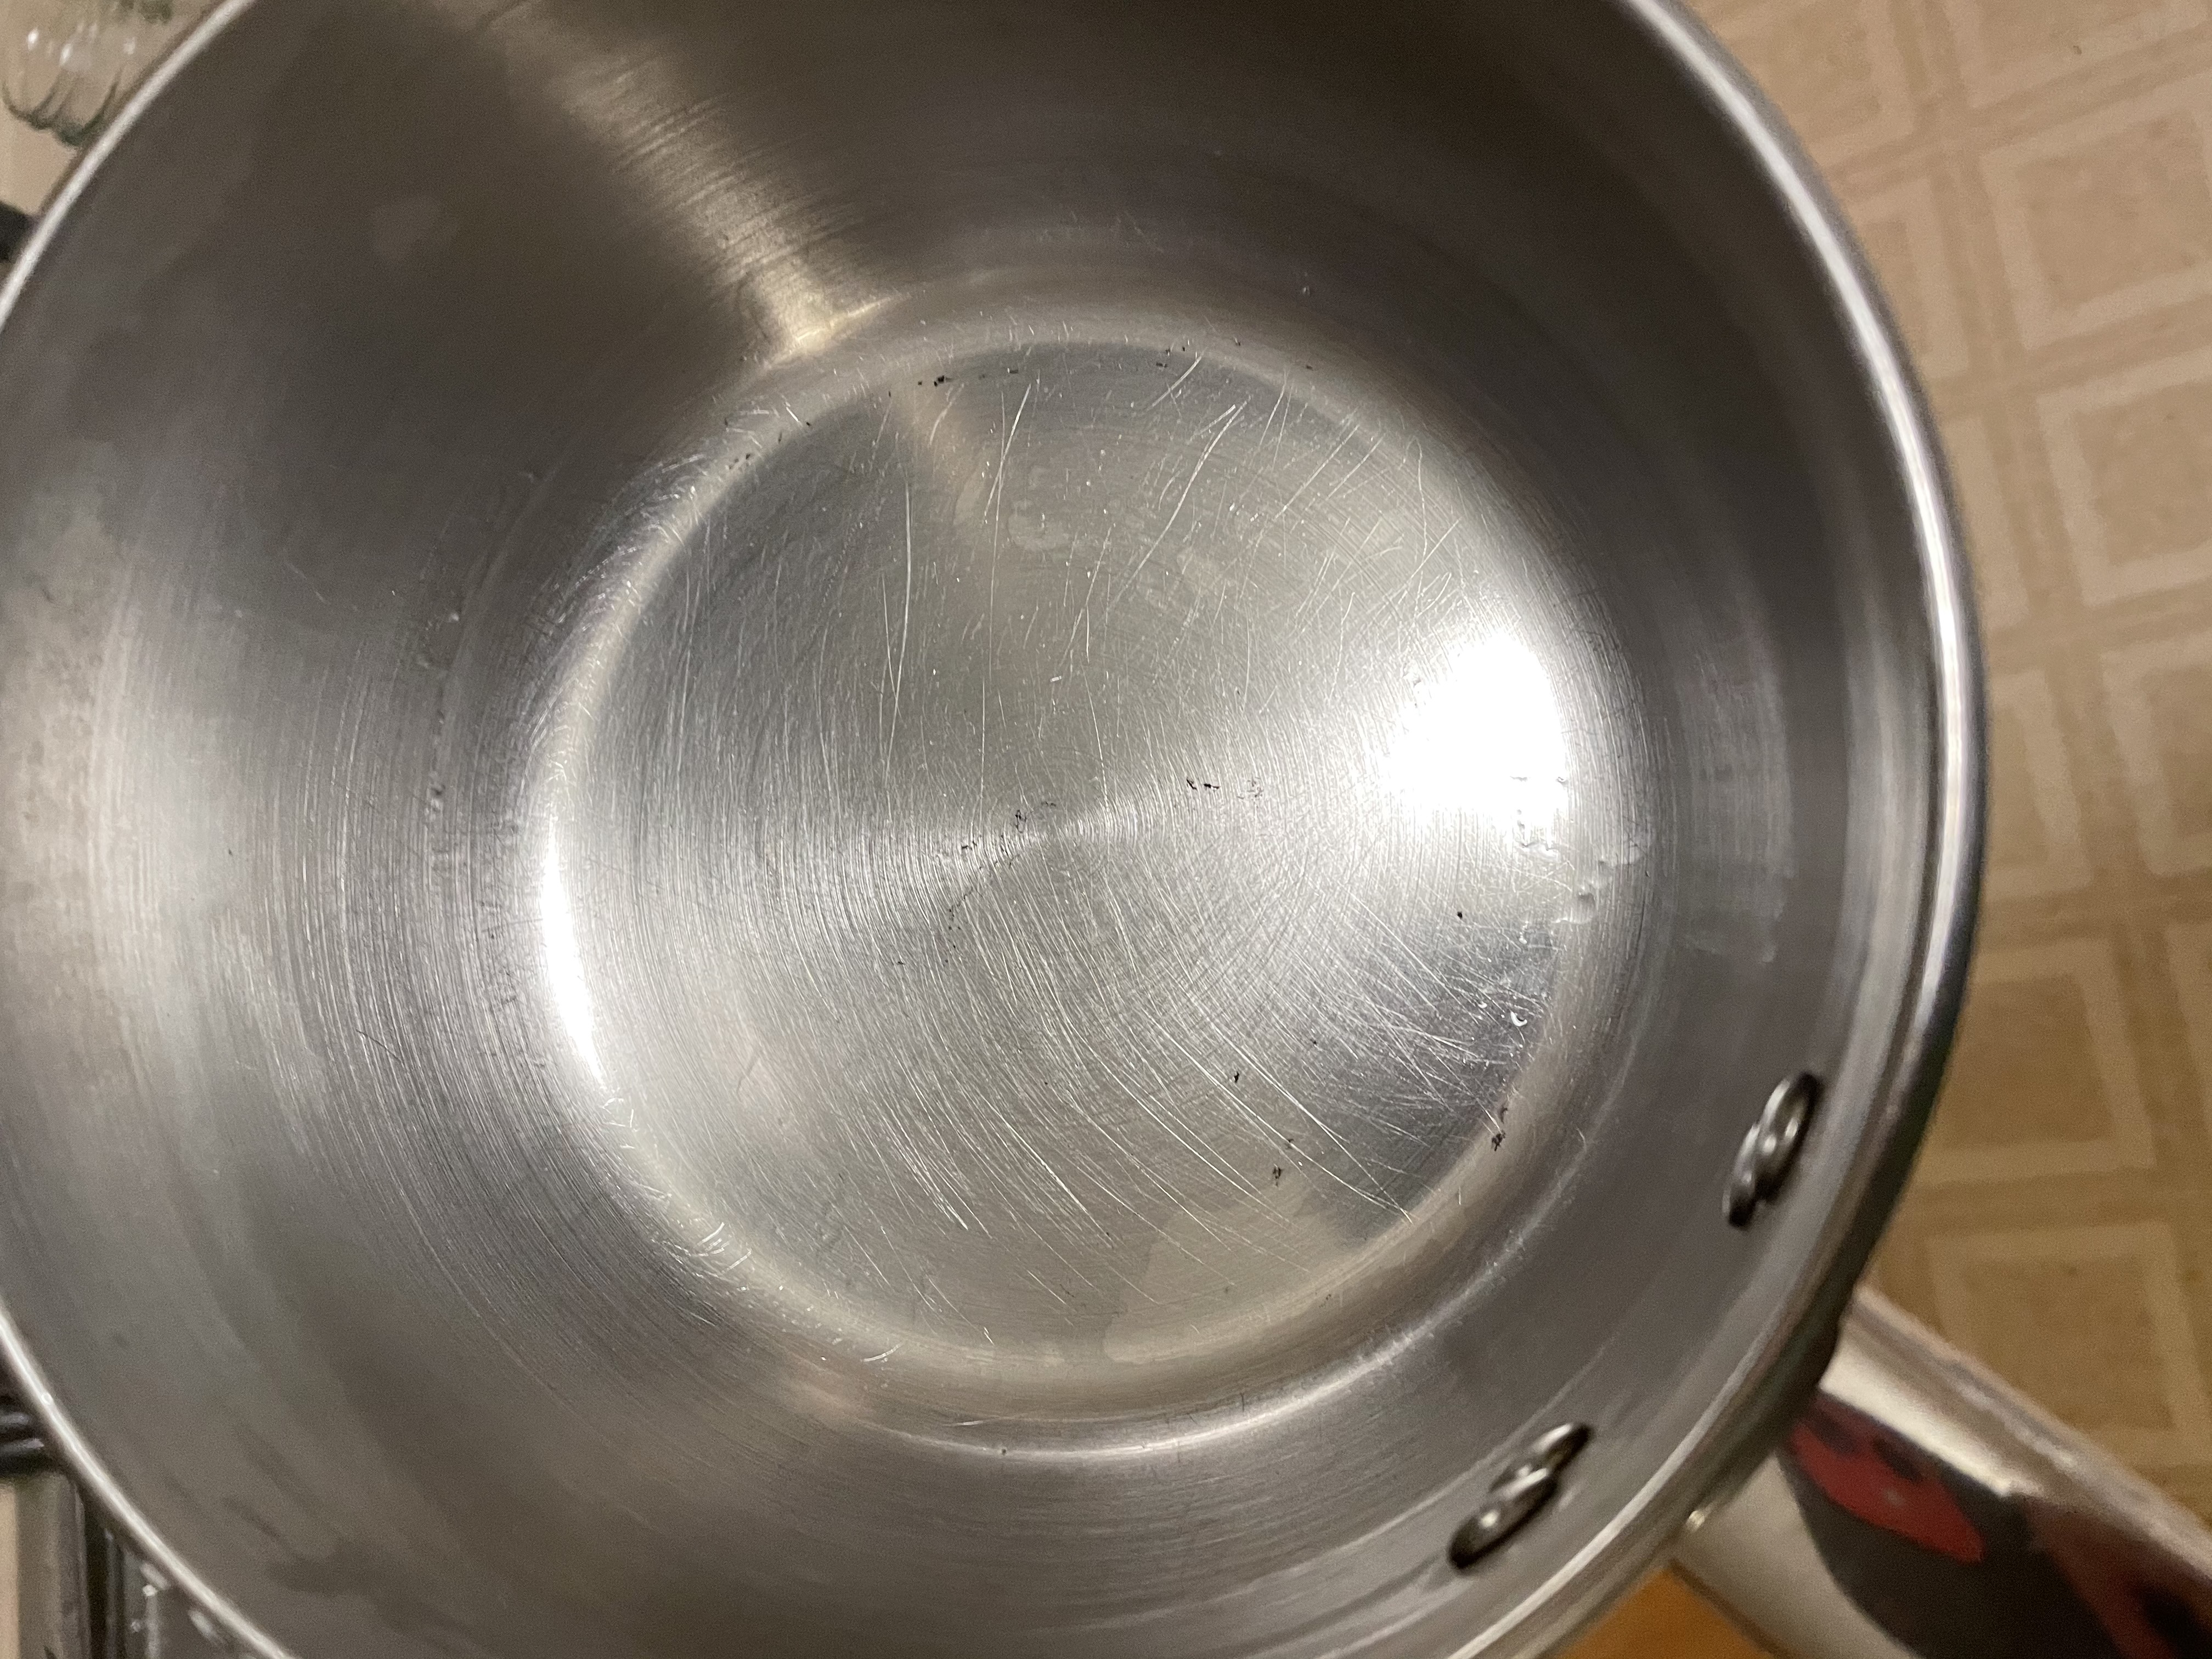 clean burned pot